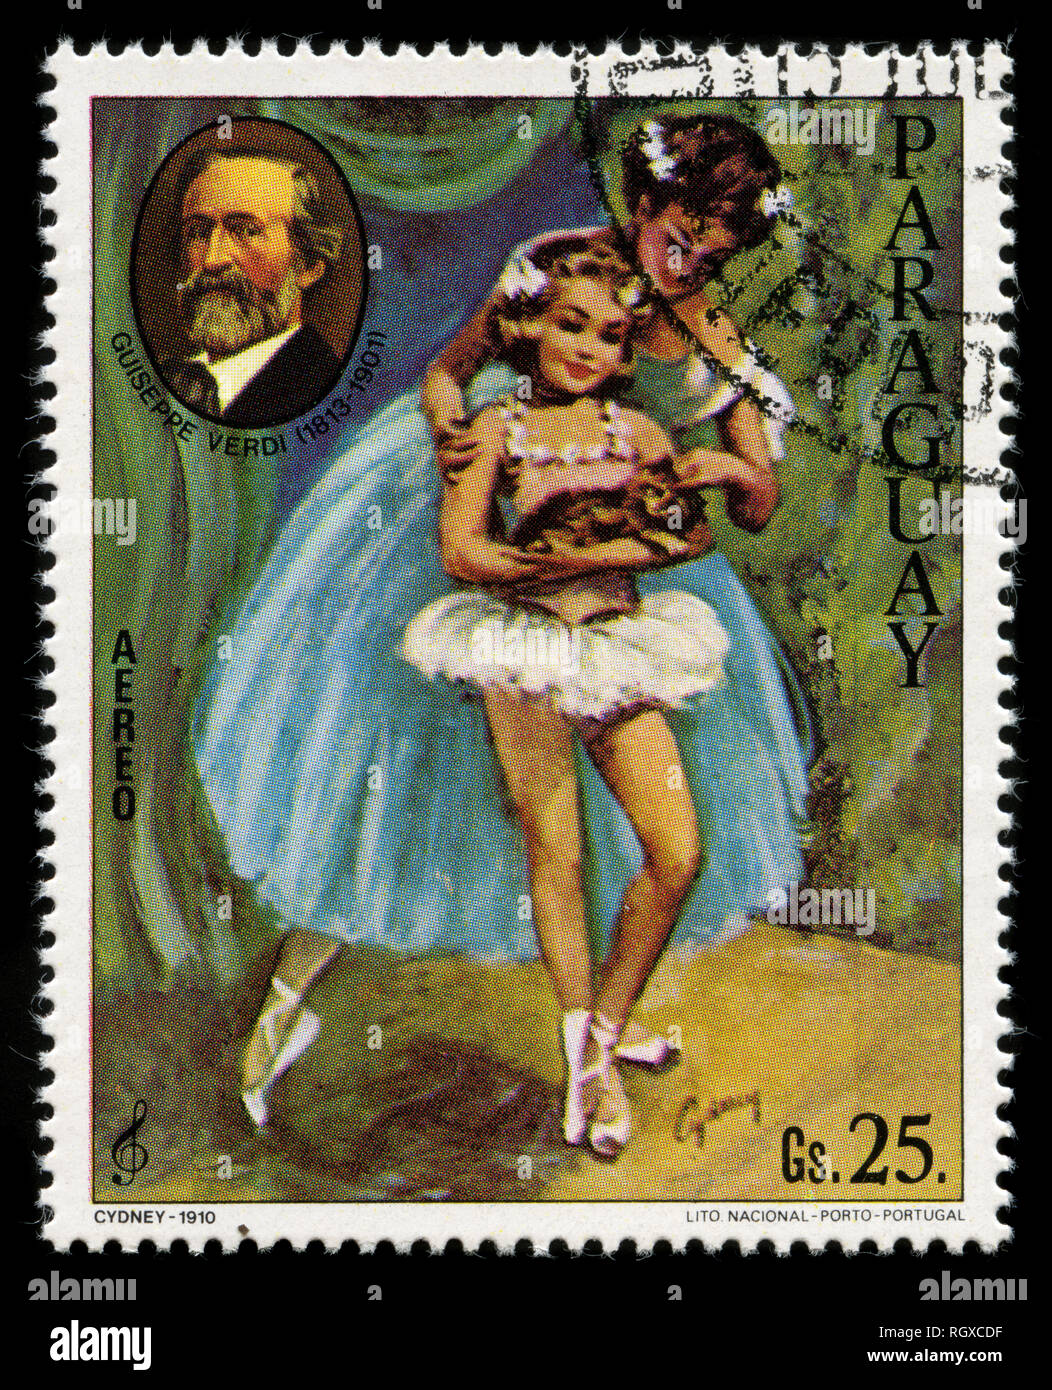 Timbre du Paraguay dans le compositeur et scènes de ballet série émise en 1980 Banque D'Images